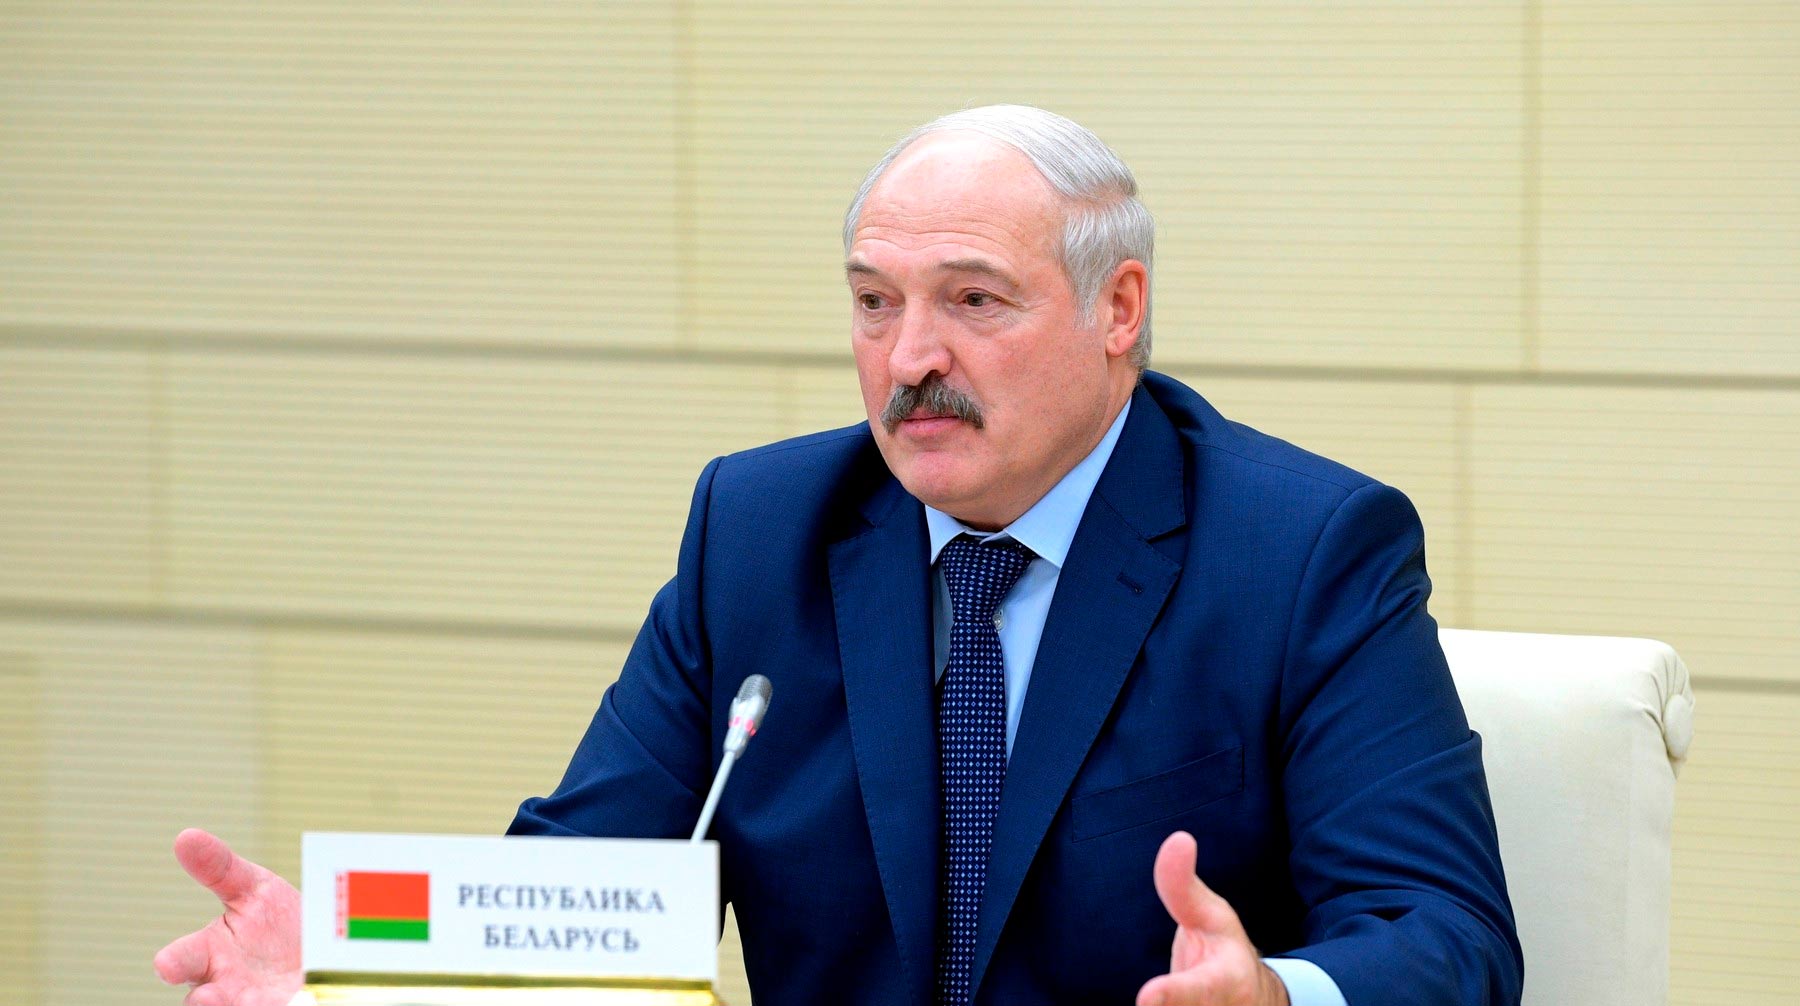 Белорусский лидер напомнил, что «травить» коронавирус можно народными методами: водкой и баней Фото: © Global Look Press / Kremlin Pool